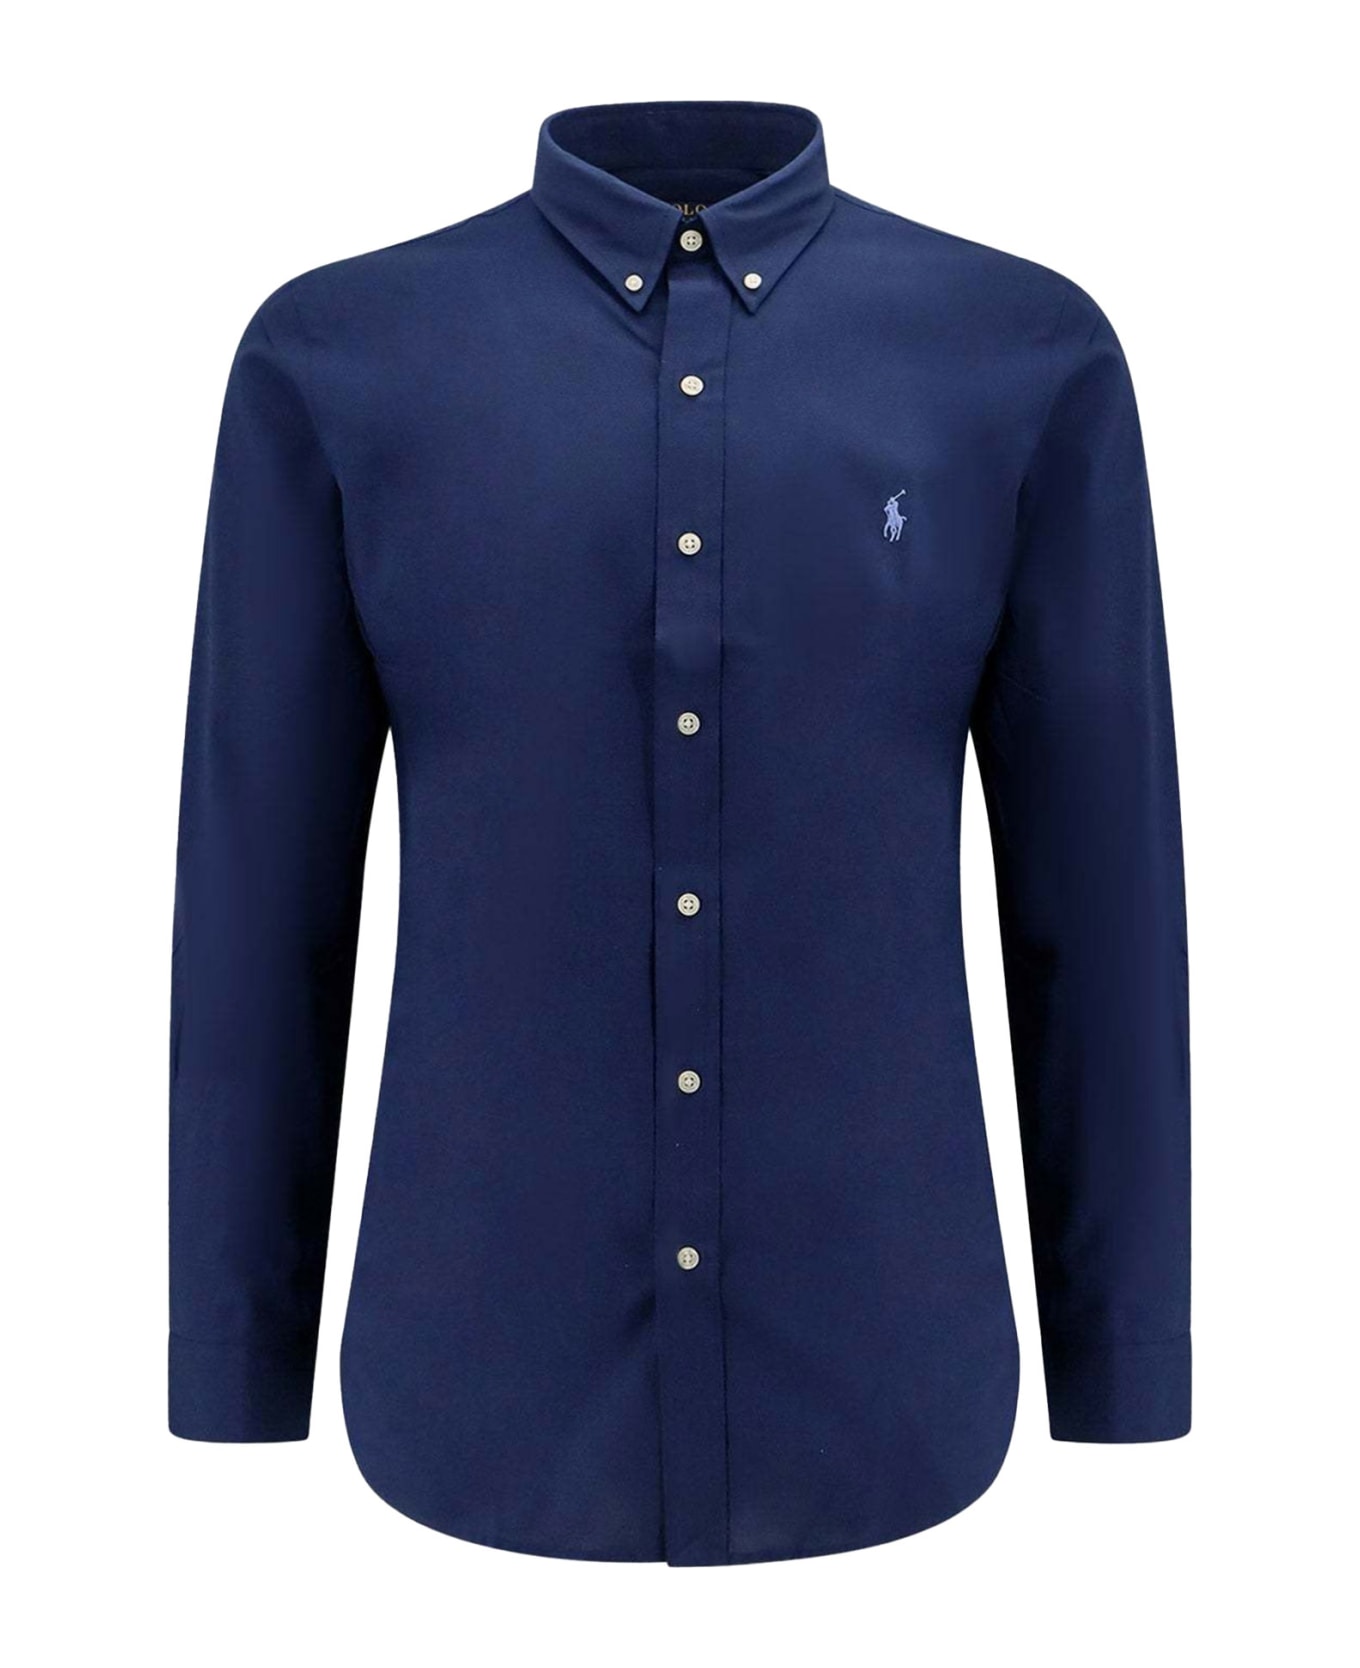 Polo Ralph Lauren Navy Blue Long-sleeved Shirt With Logo - NEWPORT NAVY